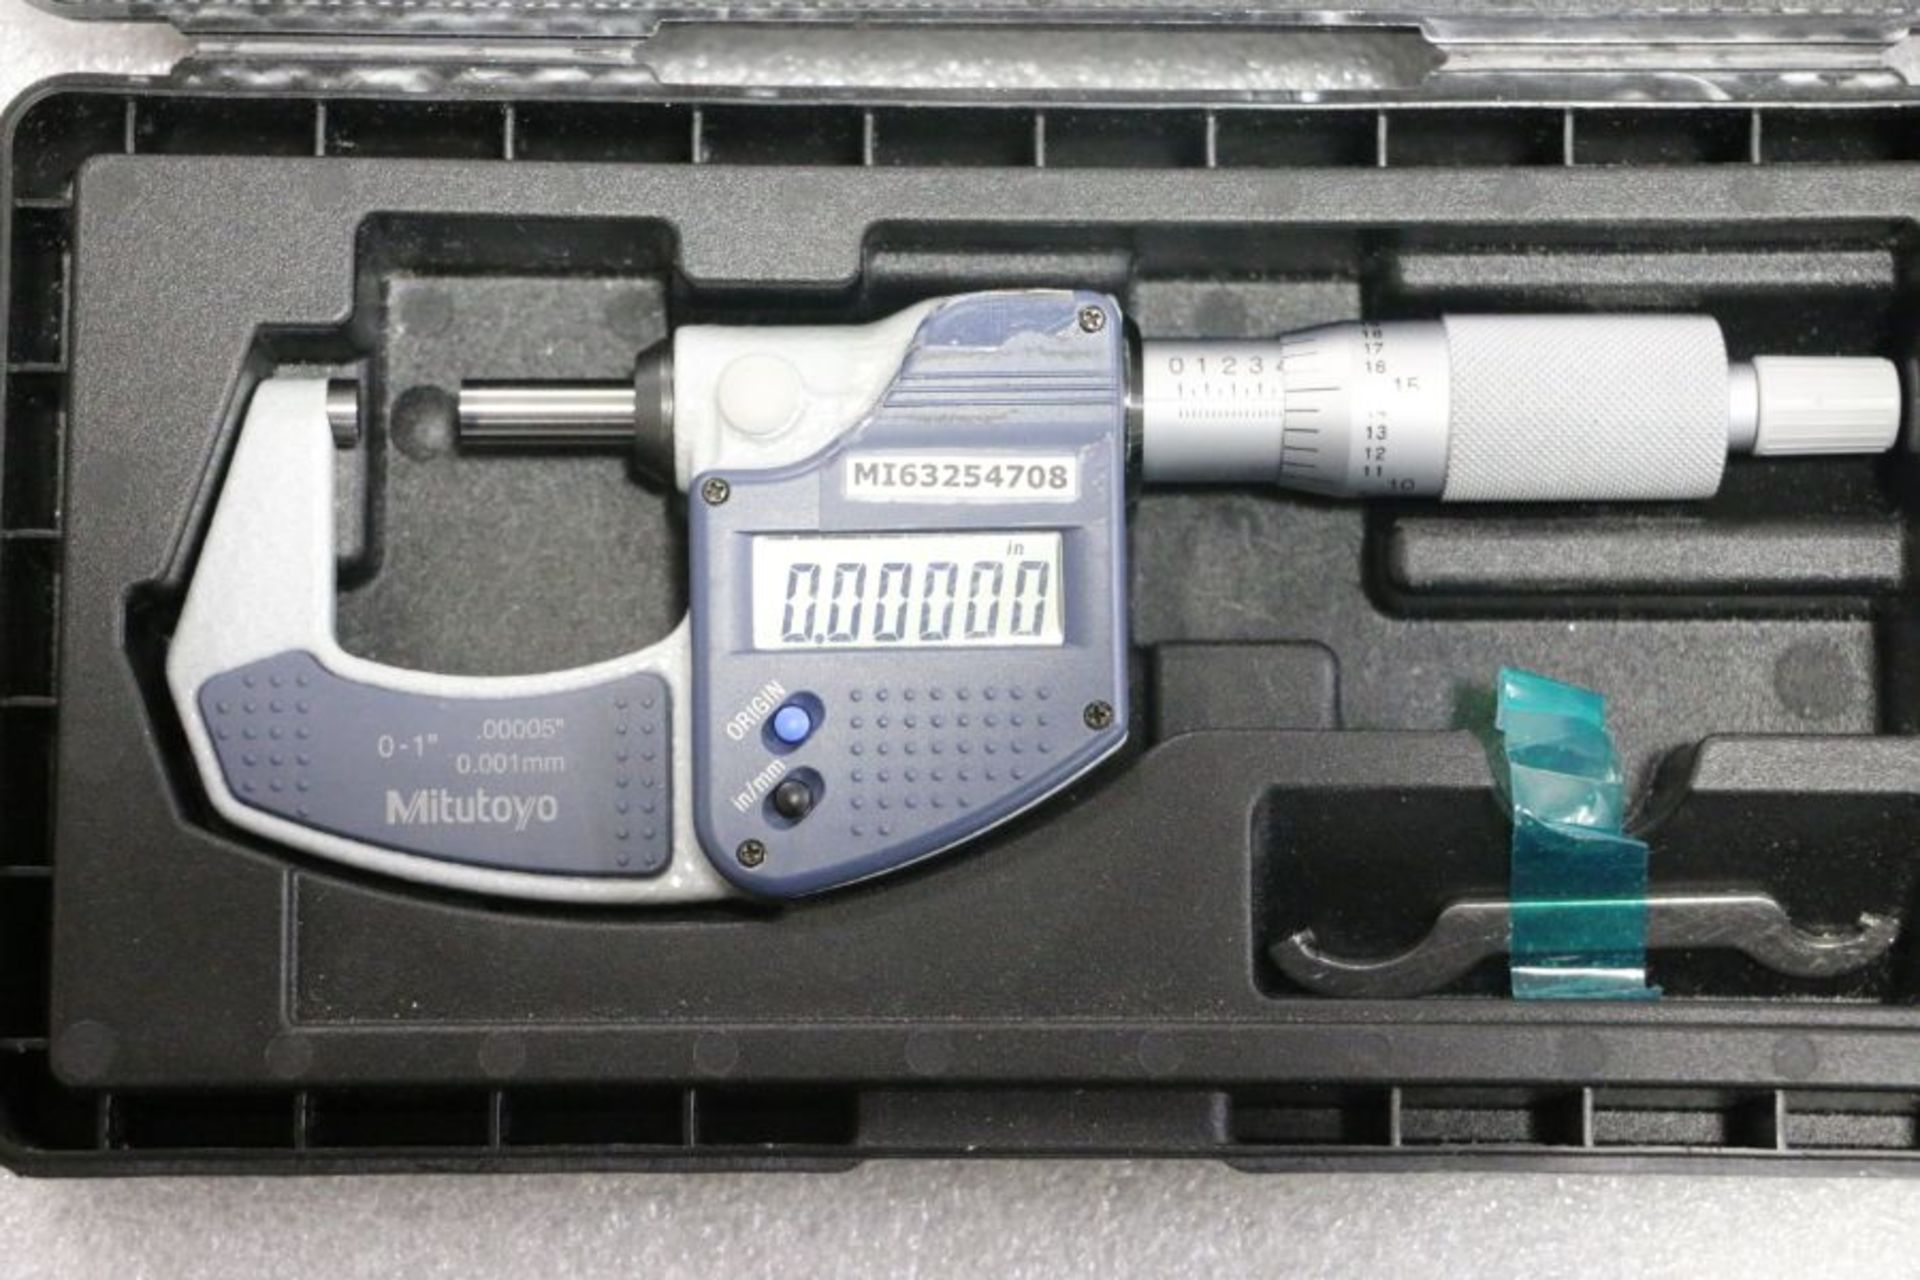 Mitutoyo 0" - 1" Digital Micrometer